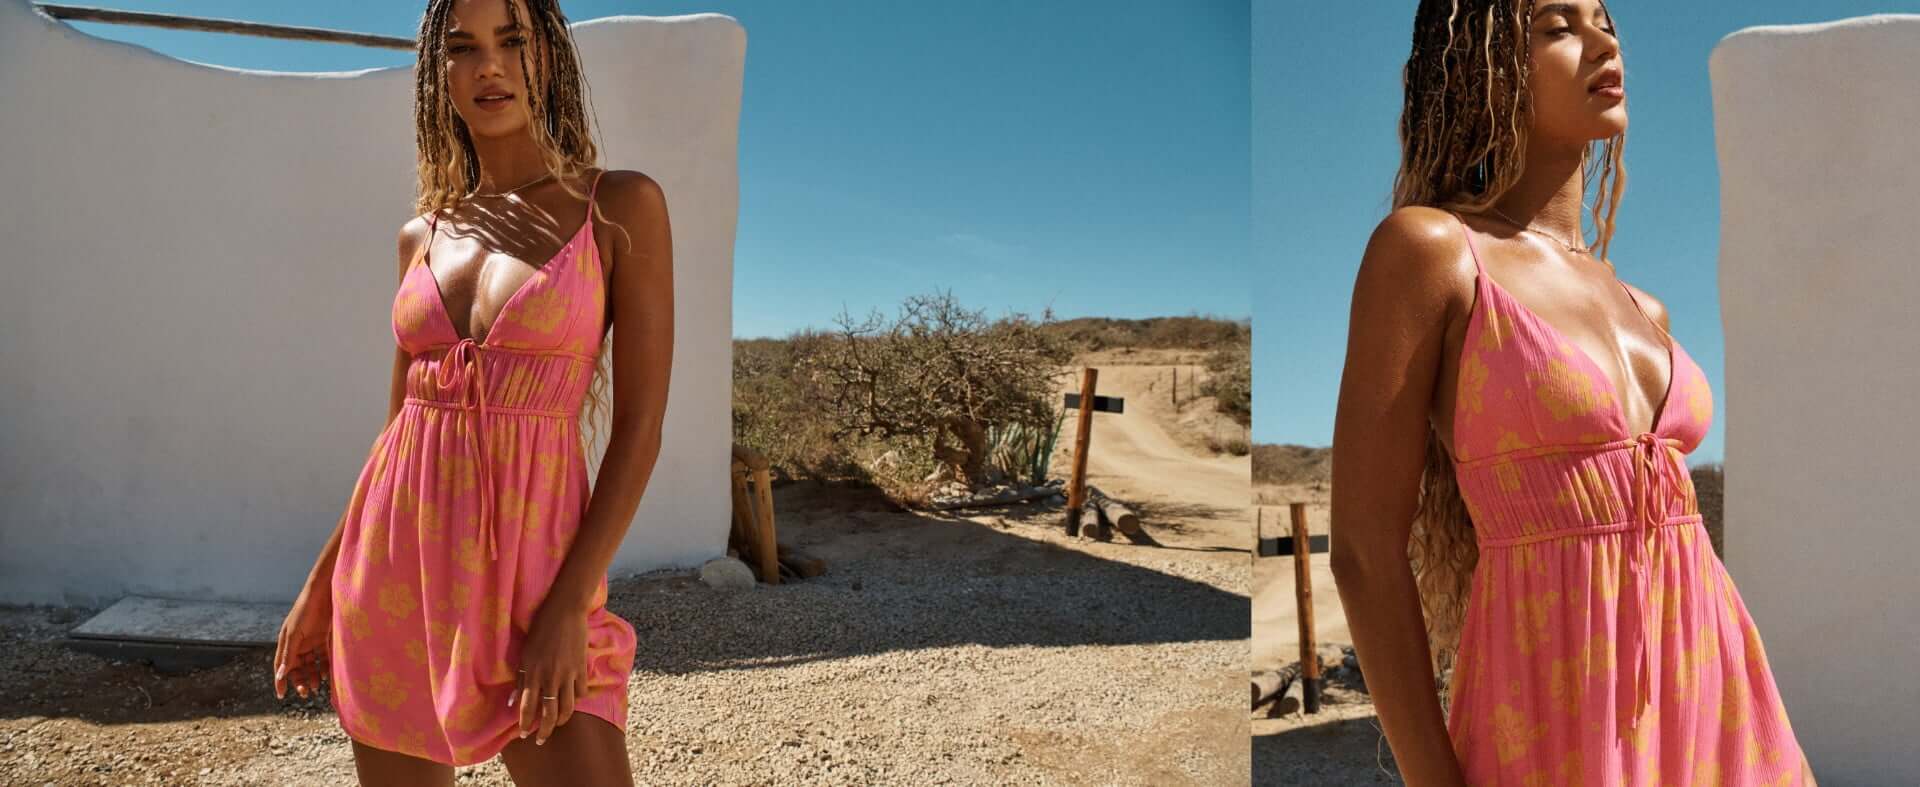 Model wearing a pink dress.